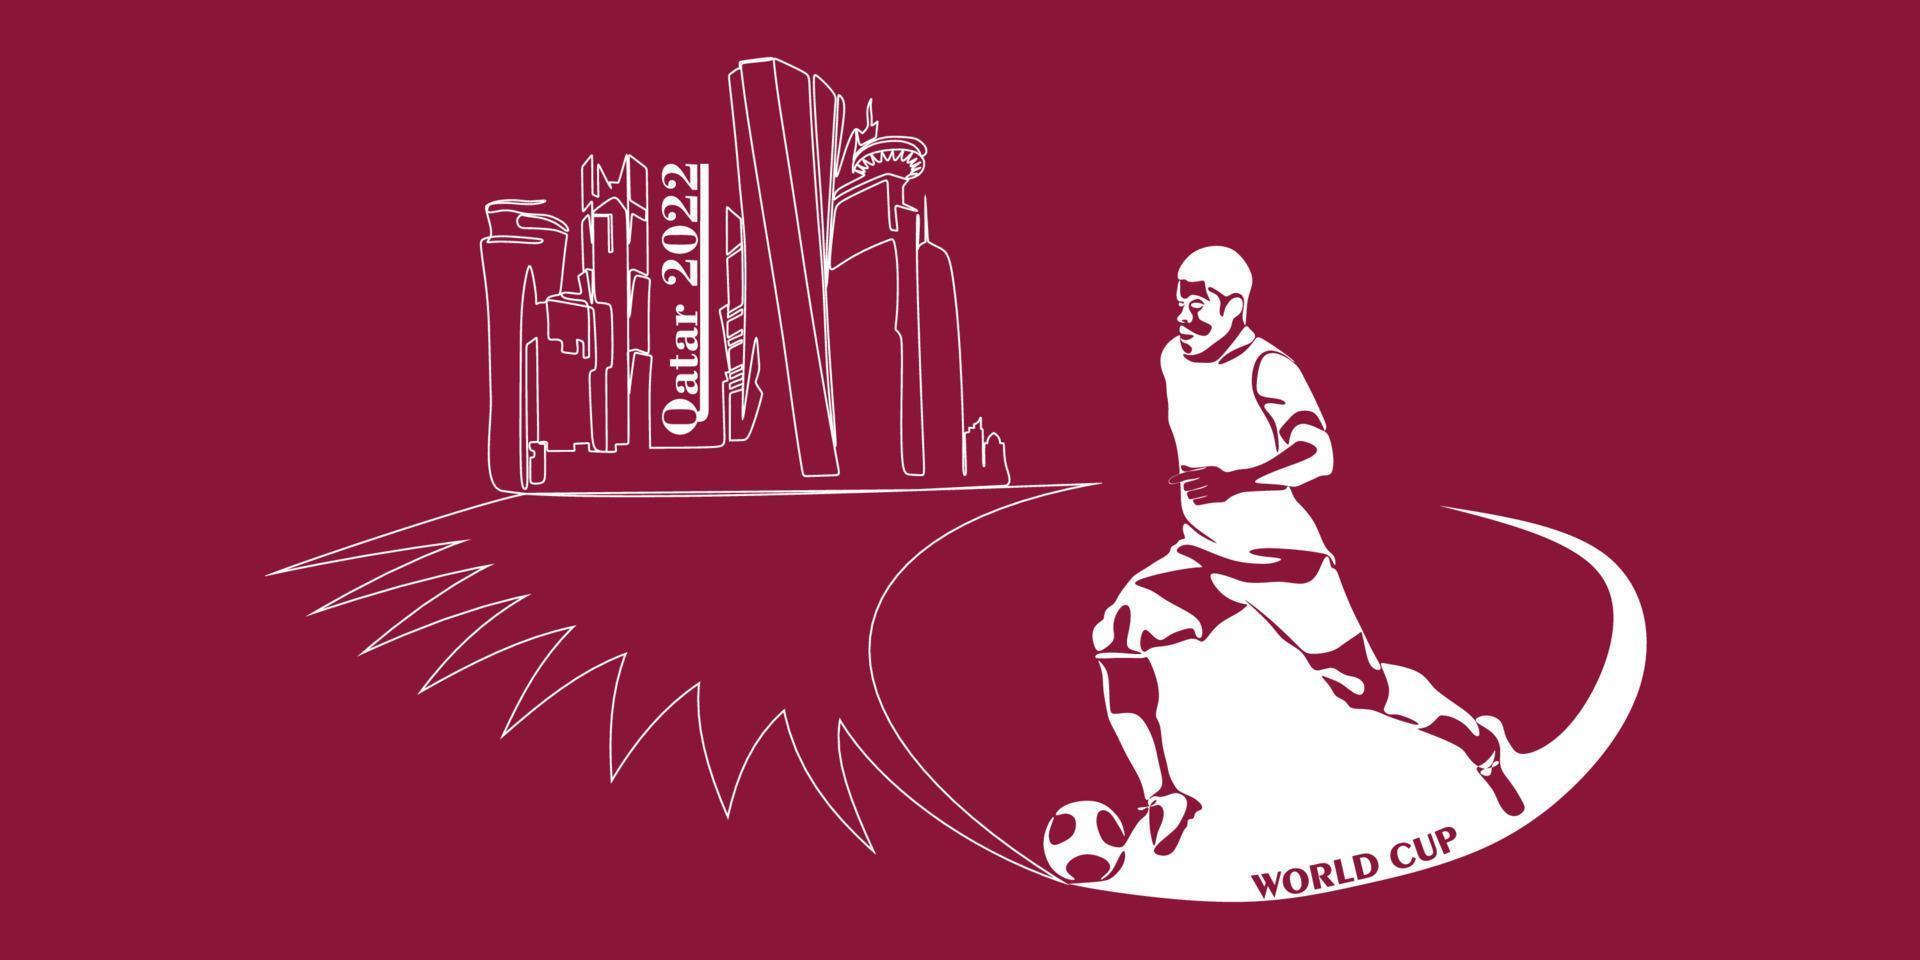 mondo tazza nel Qatar nel 2022 striscione. stilizzato vettore isolato moderno illustrazione di il capitale doha città con simbolo, colori e bandiera